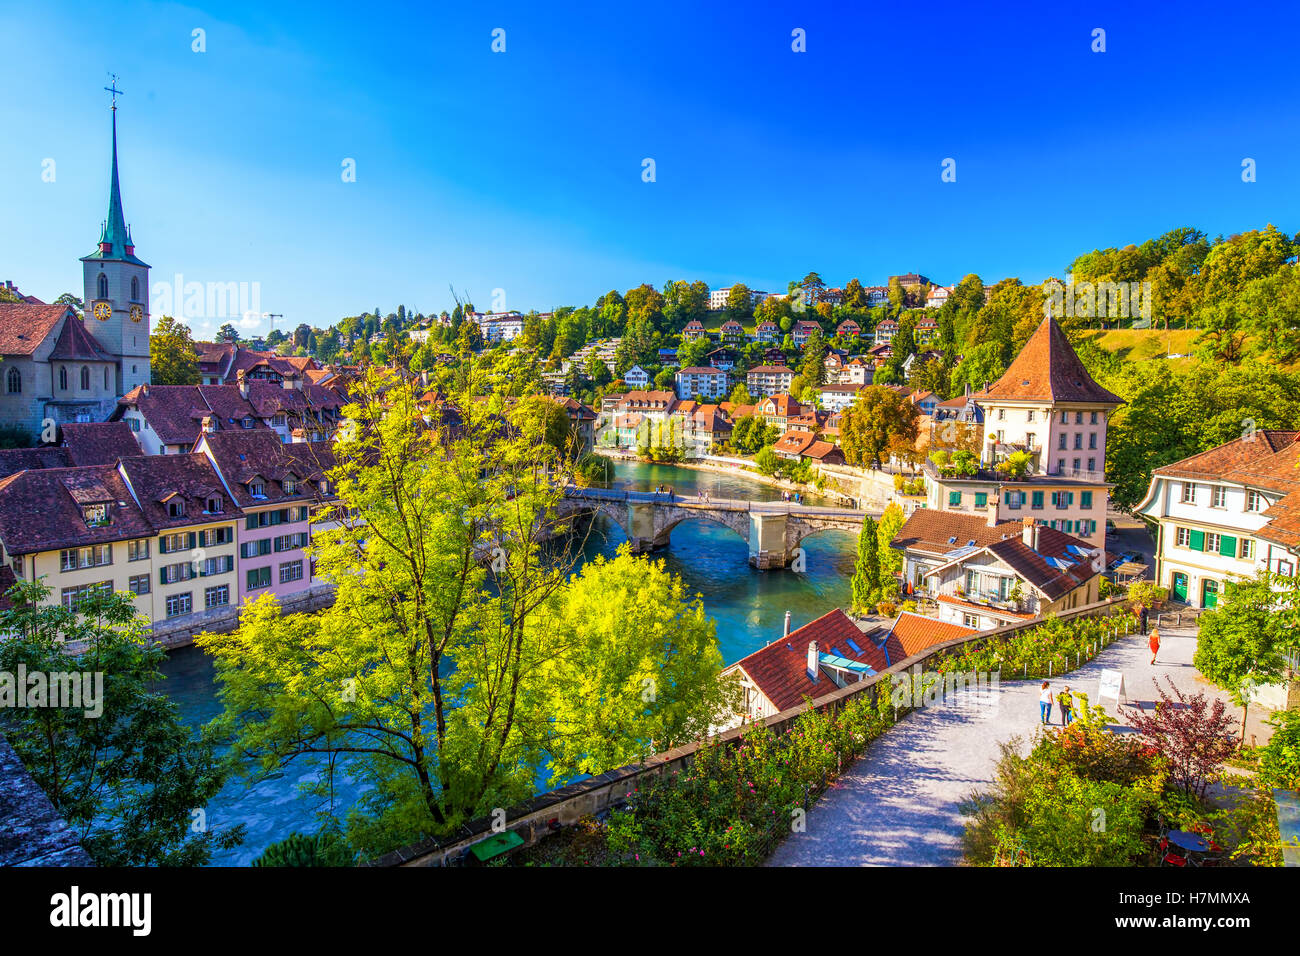 Vue sur le centre de la vieille ville de Berne avec l'Aar. Berne est la capitale de la Suisse et quatrième ville la plus peuplée de Suisse. Banque D'Images